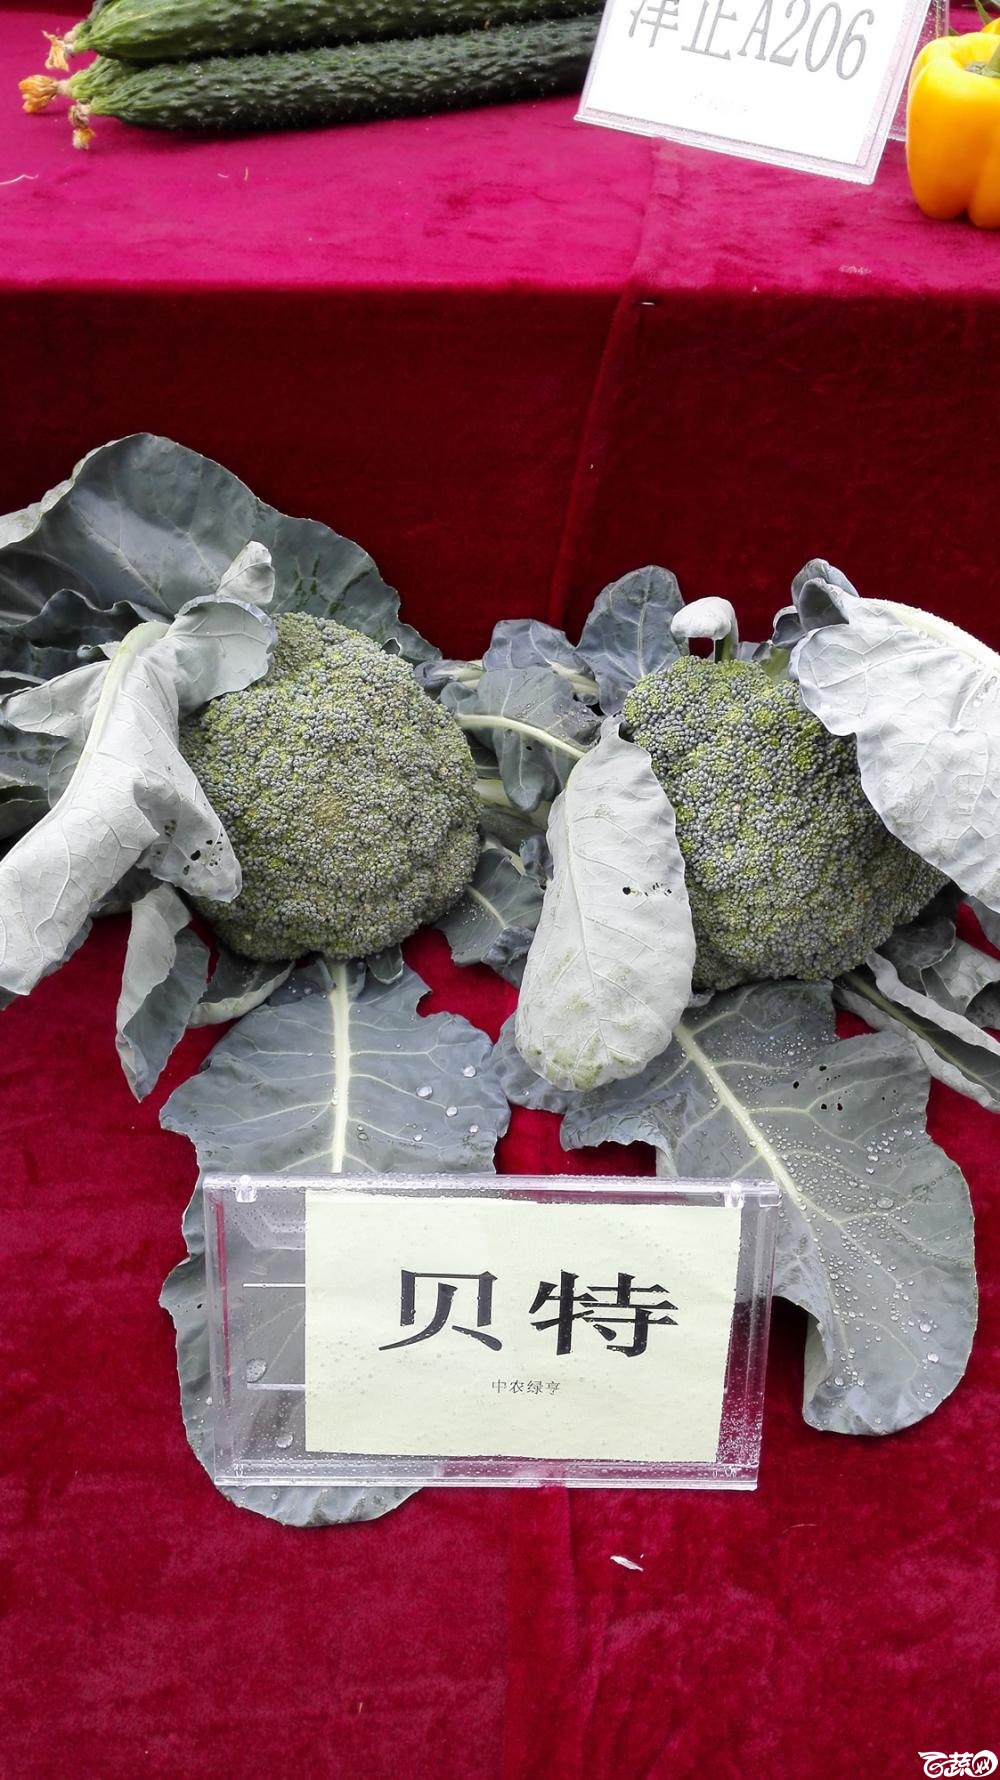 2014年12月8号中山蔬菜新品种展示会 甘蓝_004.jpg